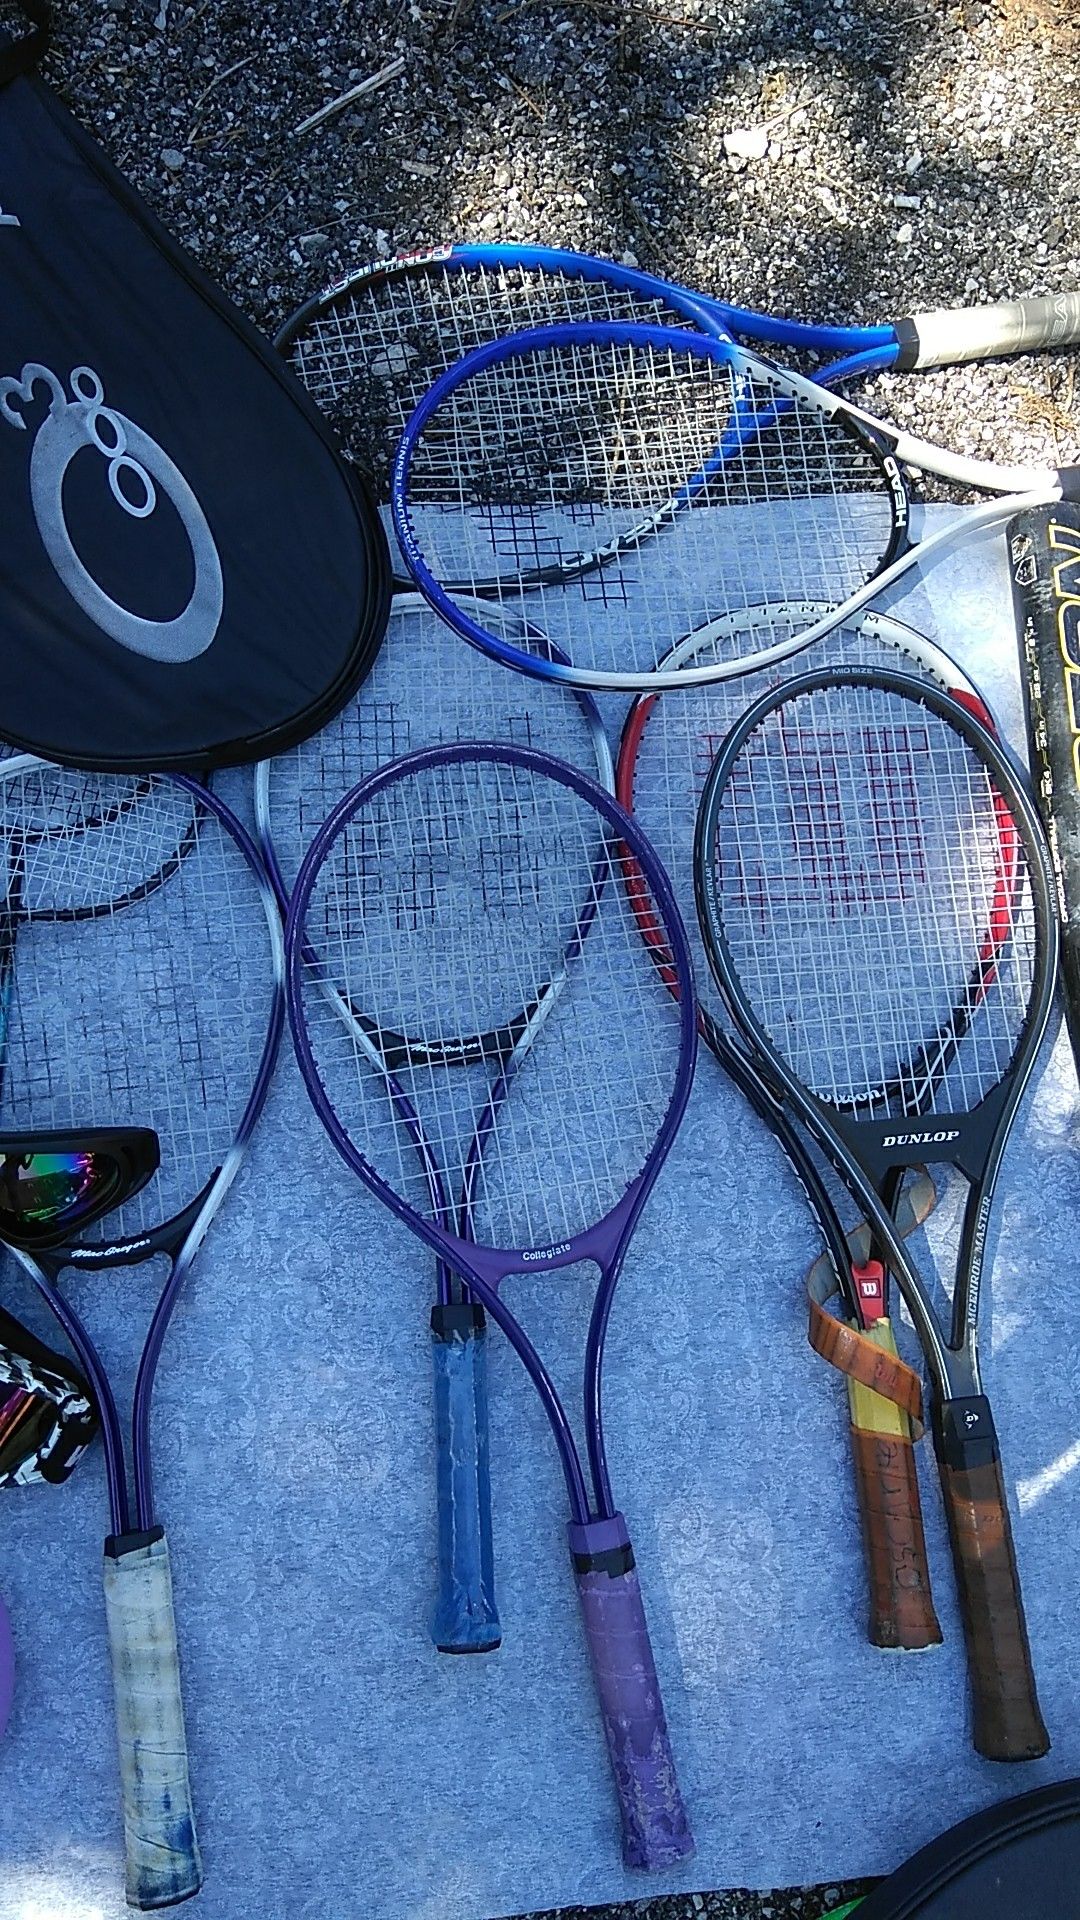 Tennis rackets dunlof, head, Mac gregor, collegiate etc